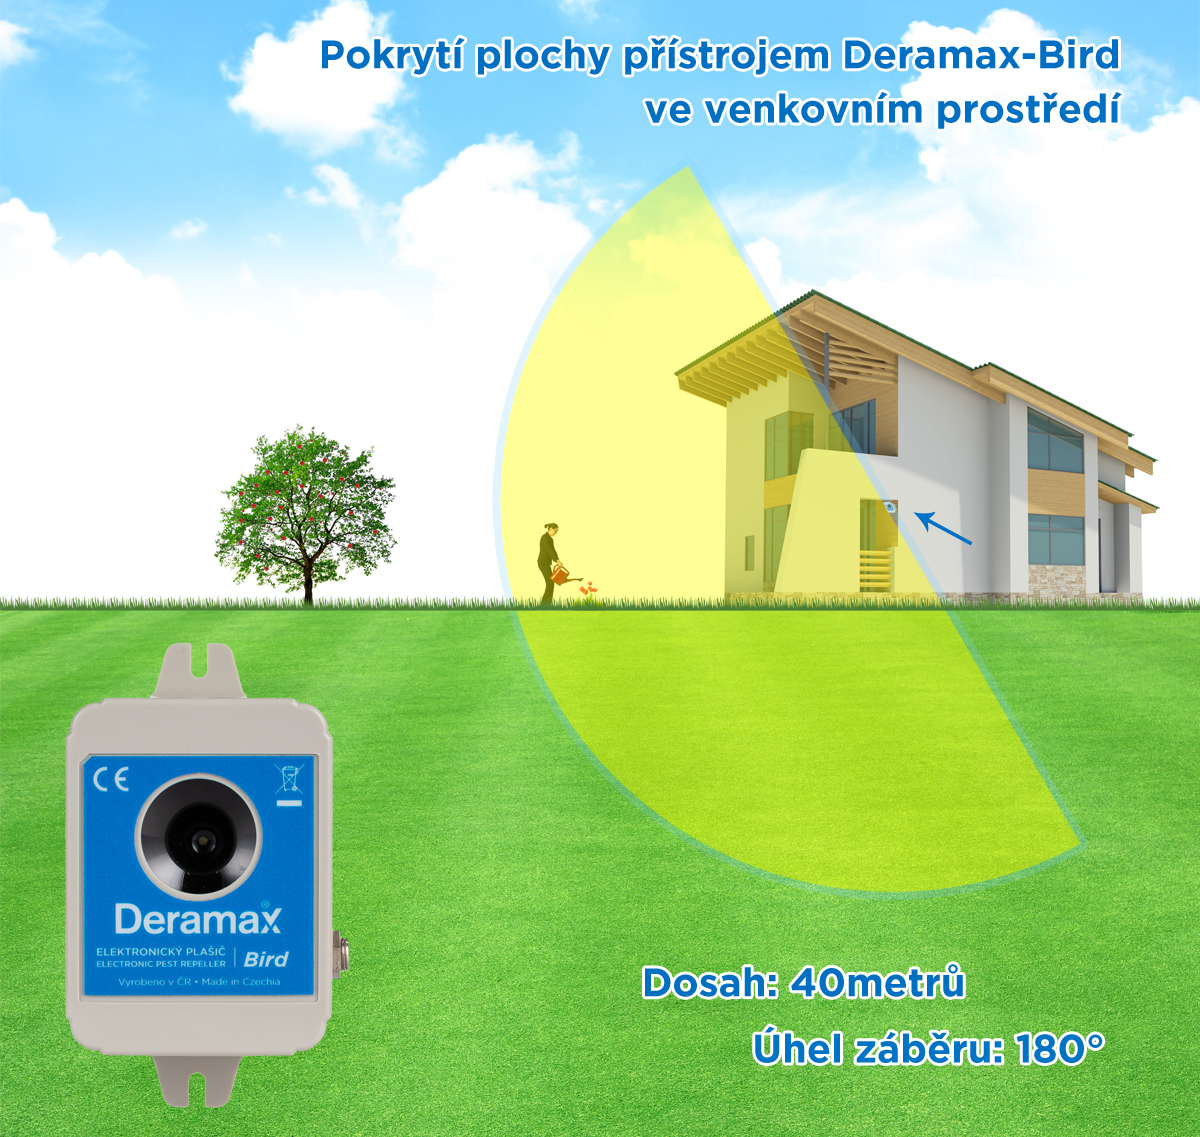 Deramax® Bird Ultrazvukový odpudzovač - plašič vtákov